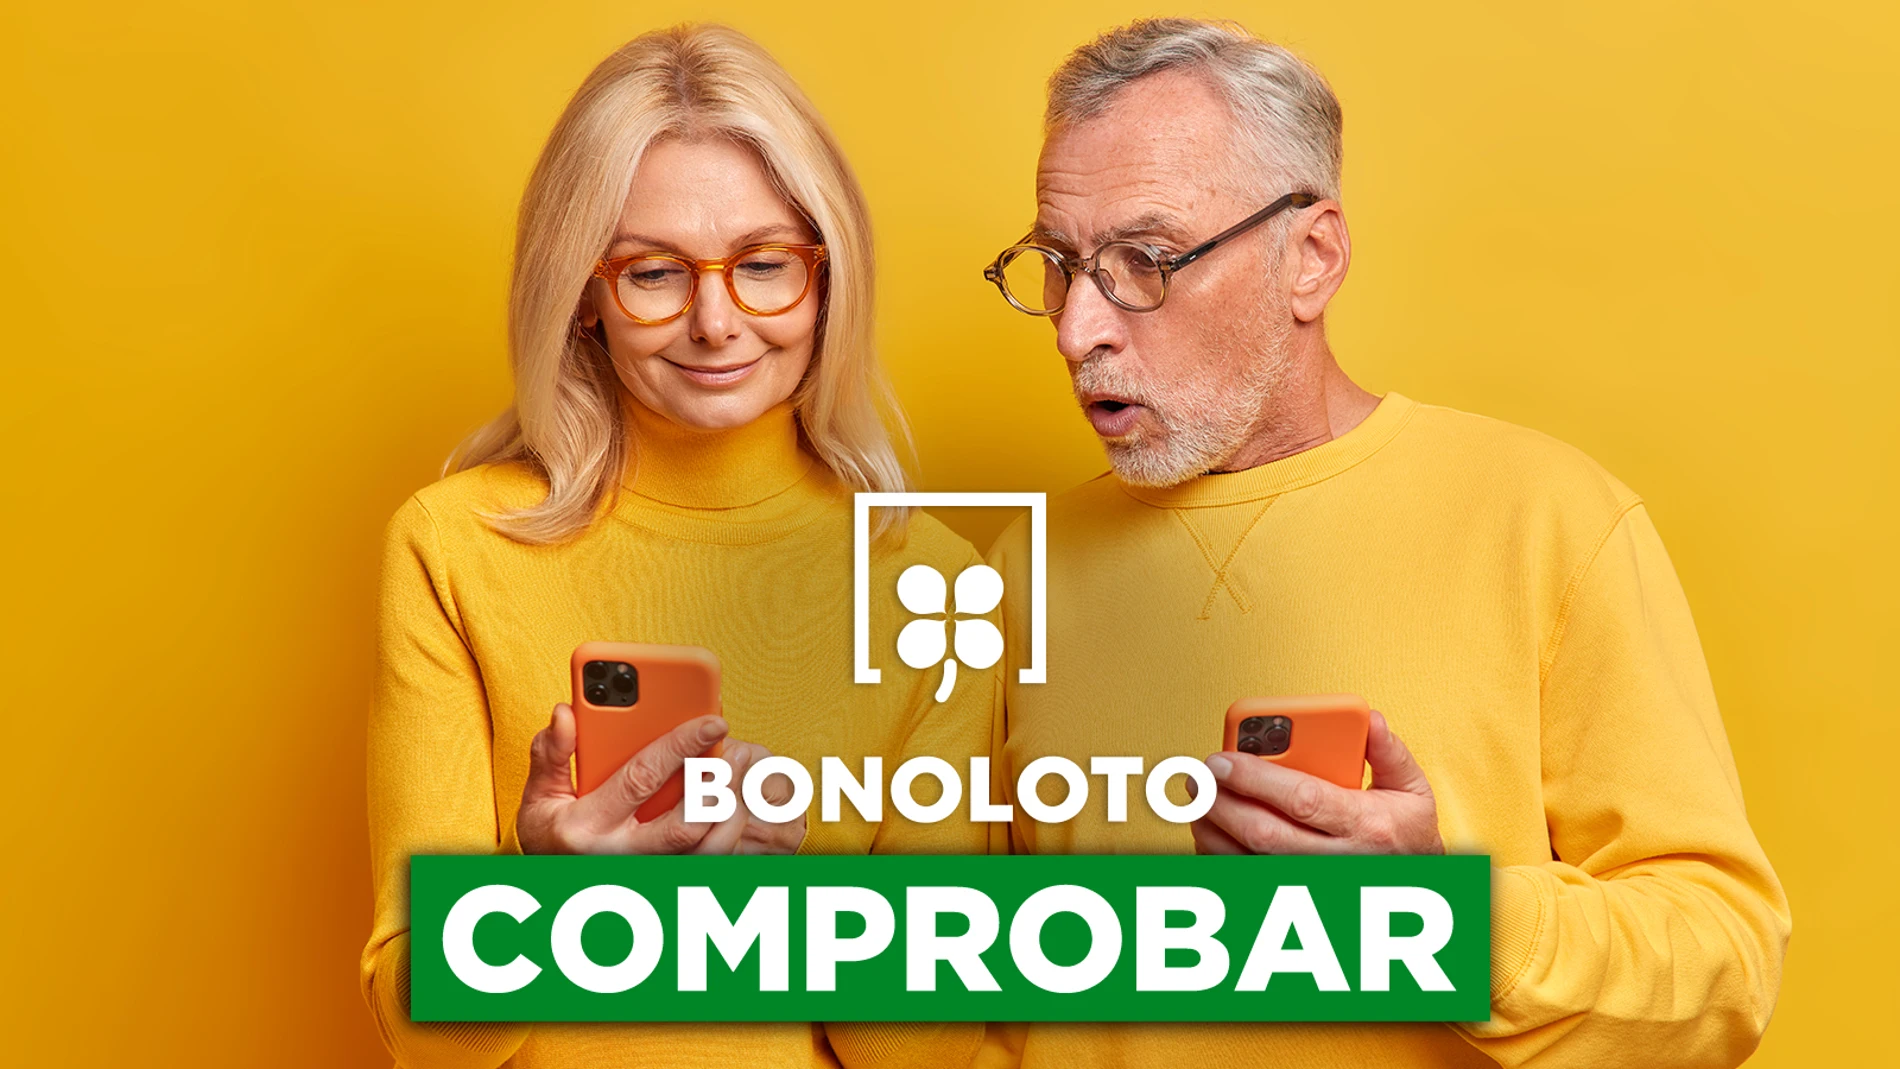 Bonoloto: comprobar hoy, viernes 11 de noviembre de 2022